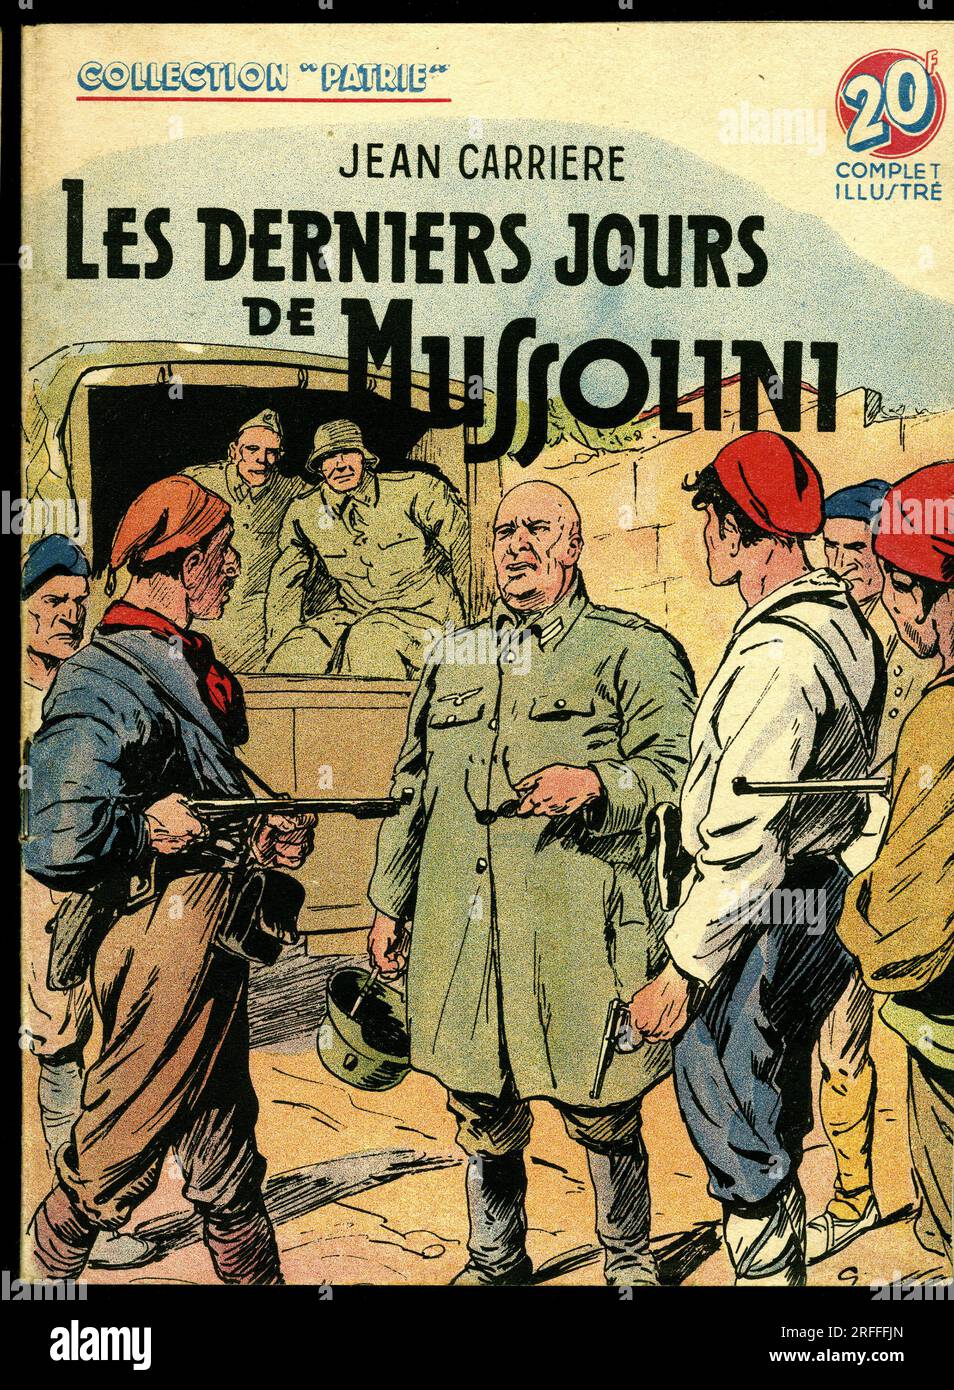 Couverture d'un illustre pour la jeunesse ' Les derniers jours de Mussolini' de Jean Carriere ( 1928- 2005), editions Rouff, collection Patrie, numero 83, 1949, Paris. Stock Photo